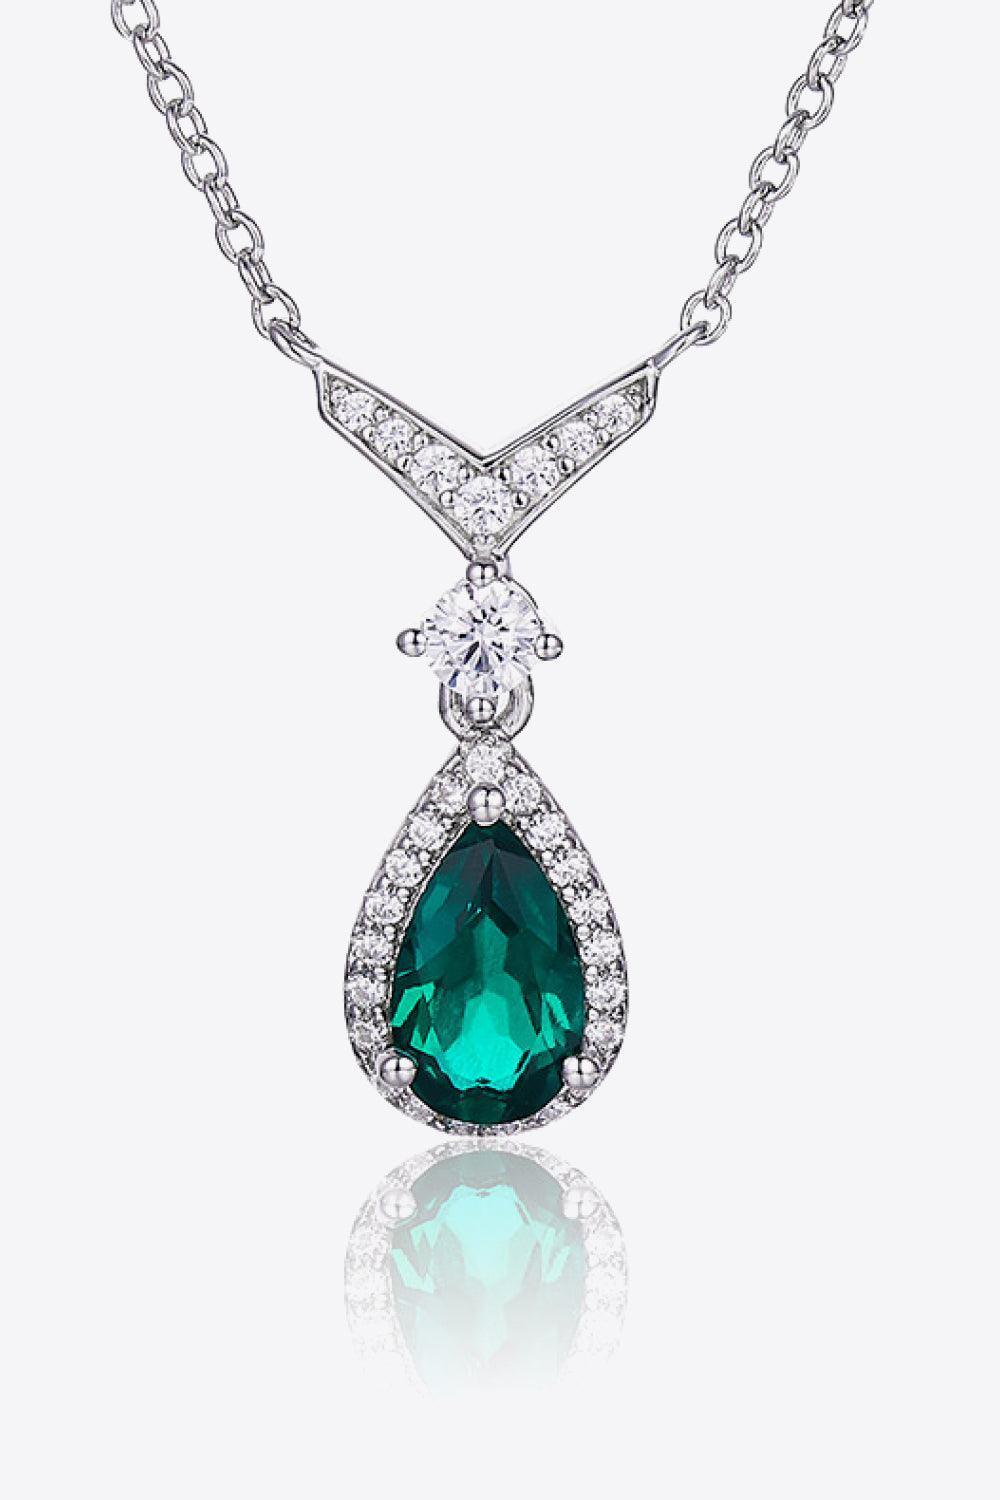 Exquisite Lab-Grown Teardrop Green Emerald Necklace - MXSTUDIO.COM